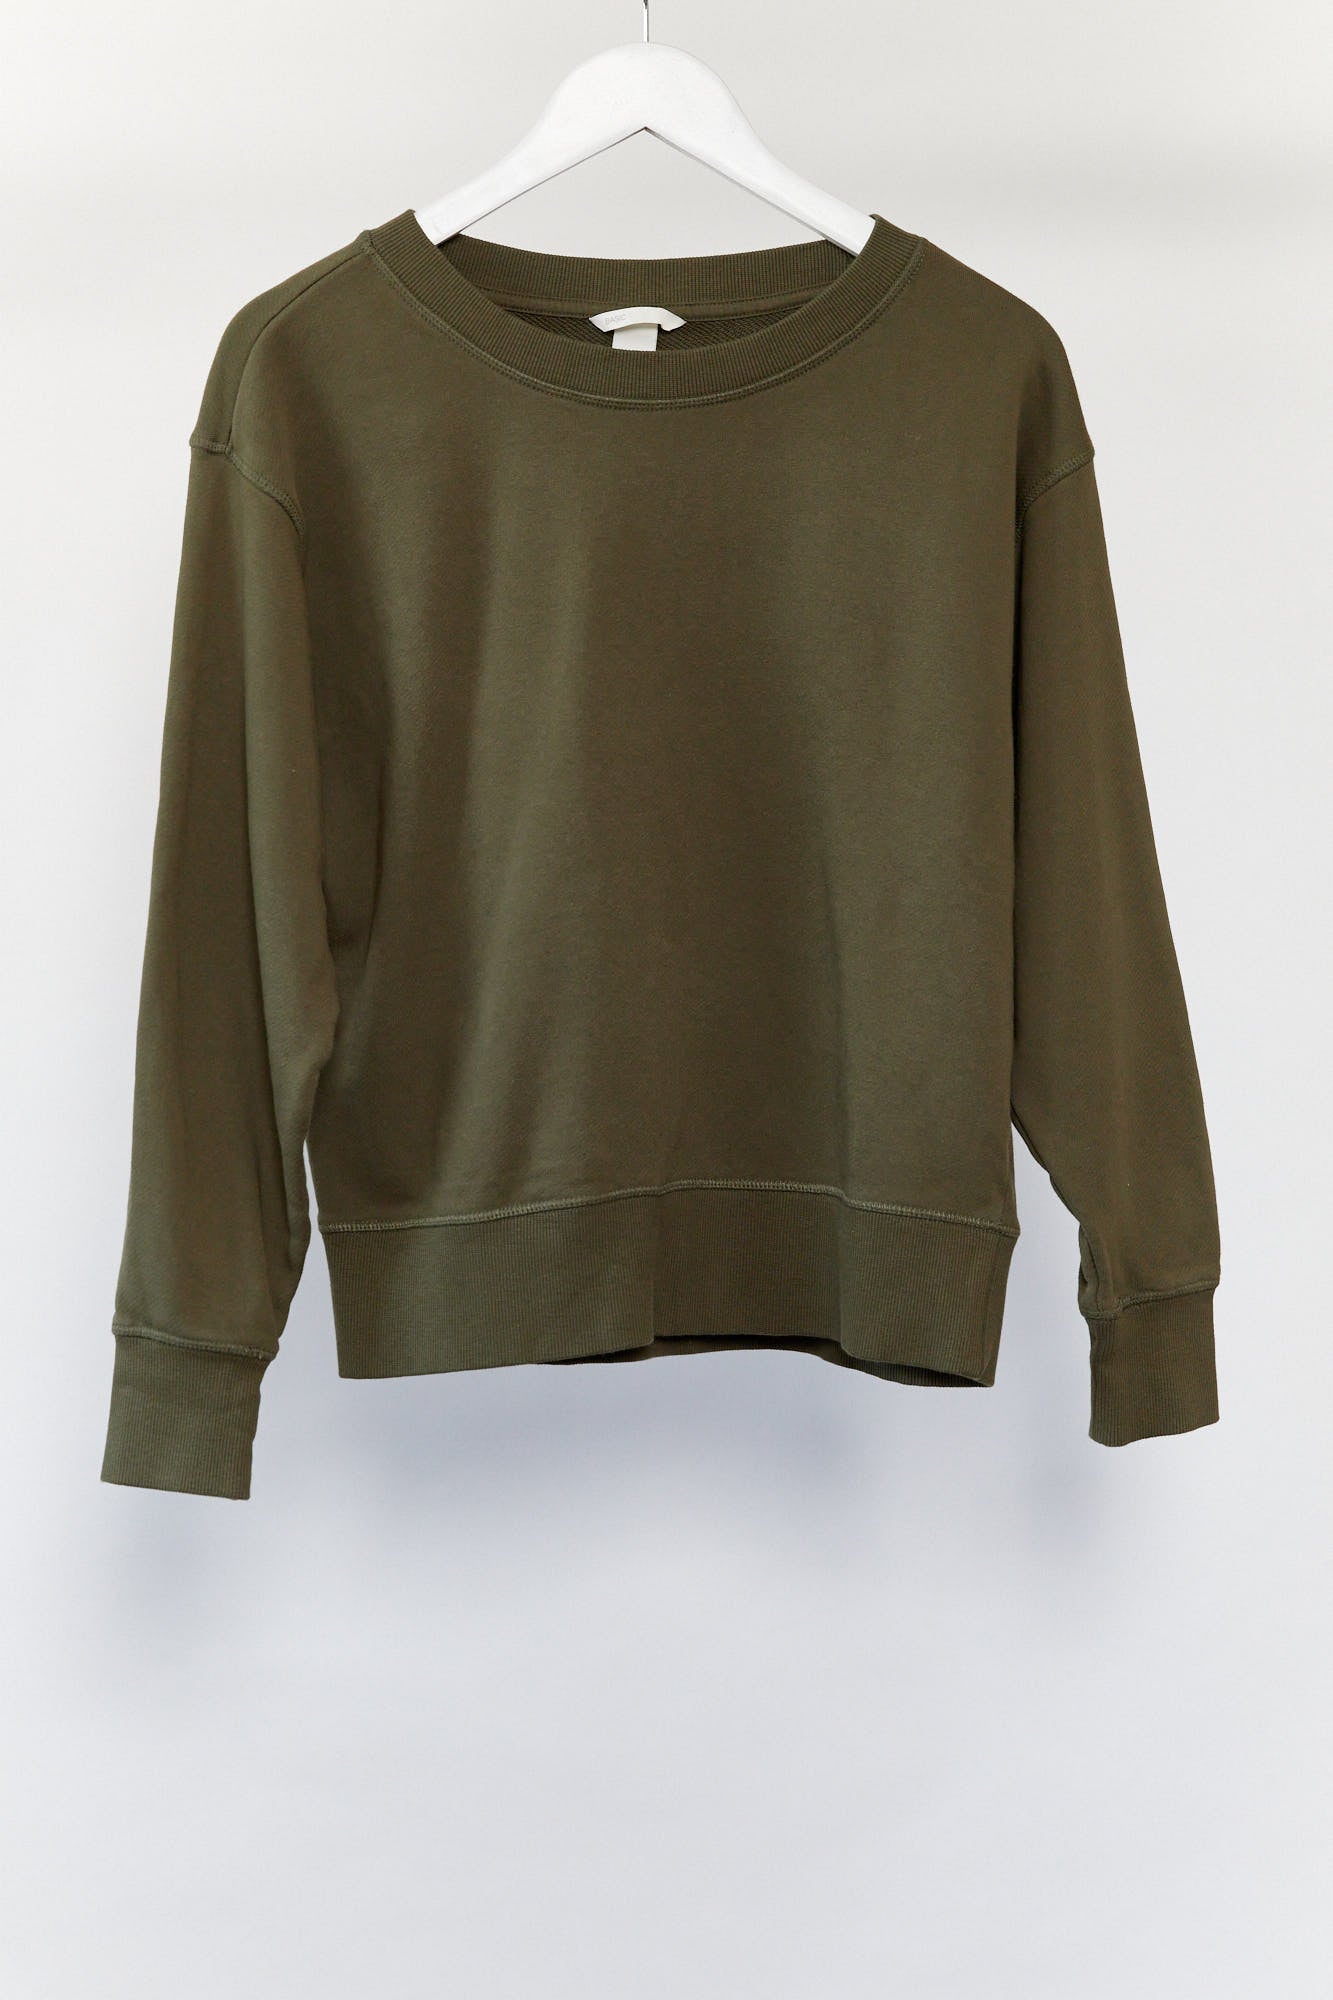 Womens Khaki H&M sweater size small